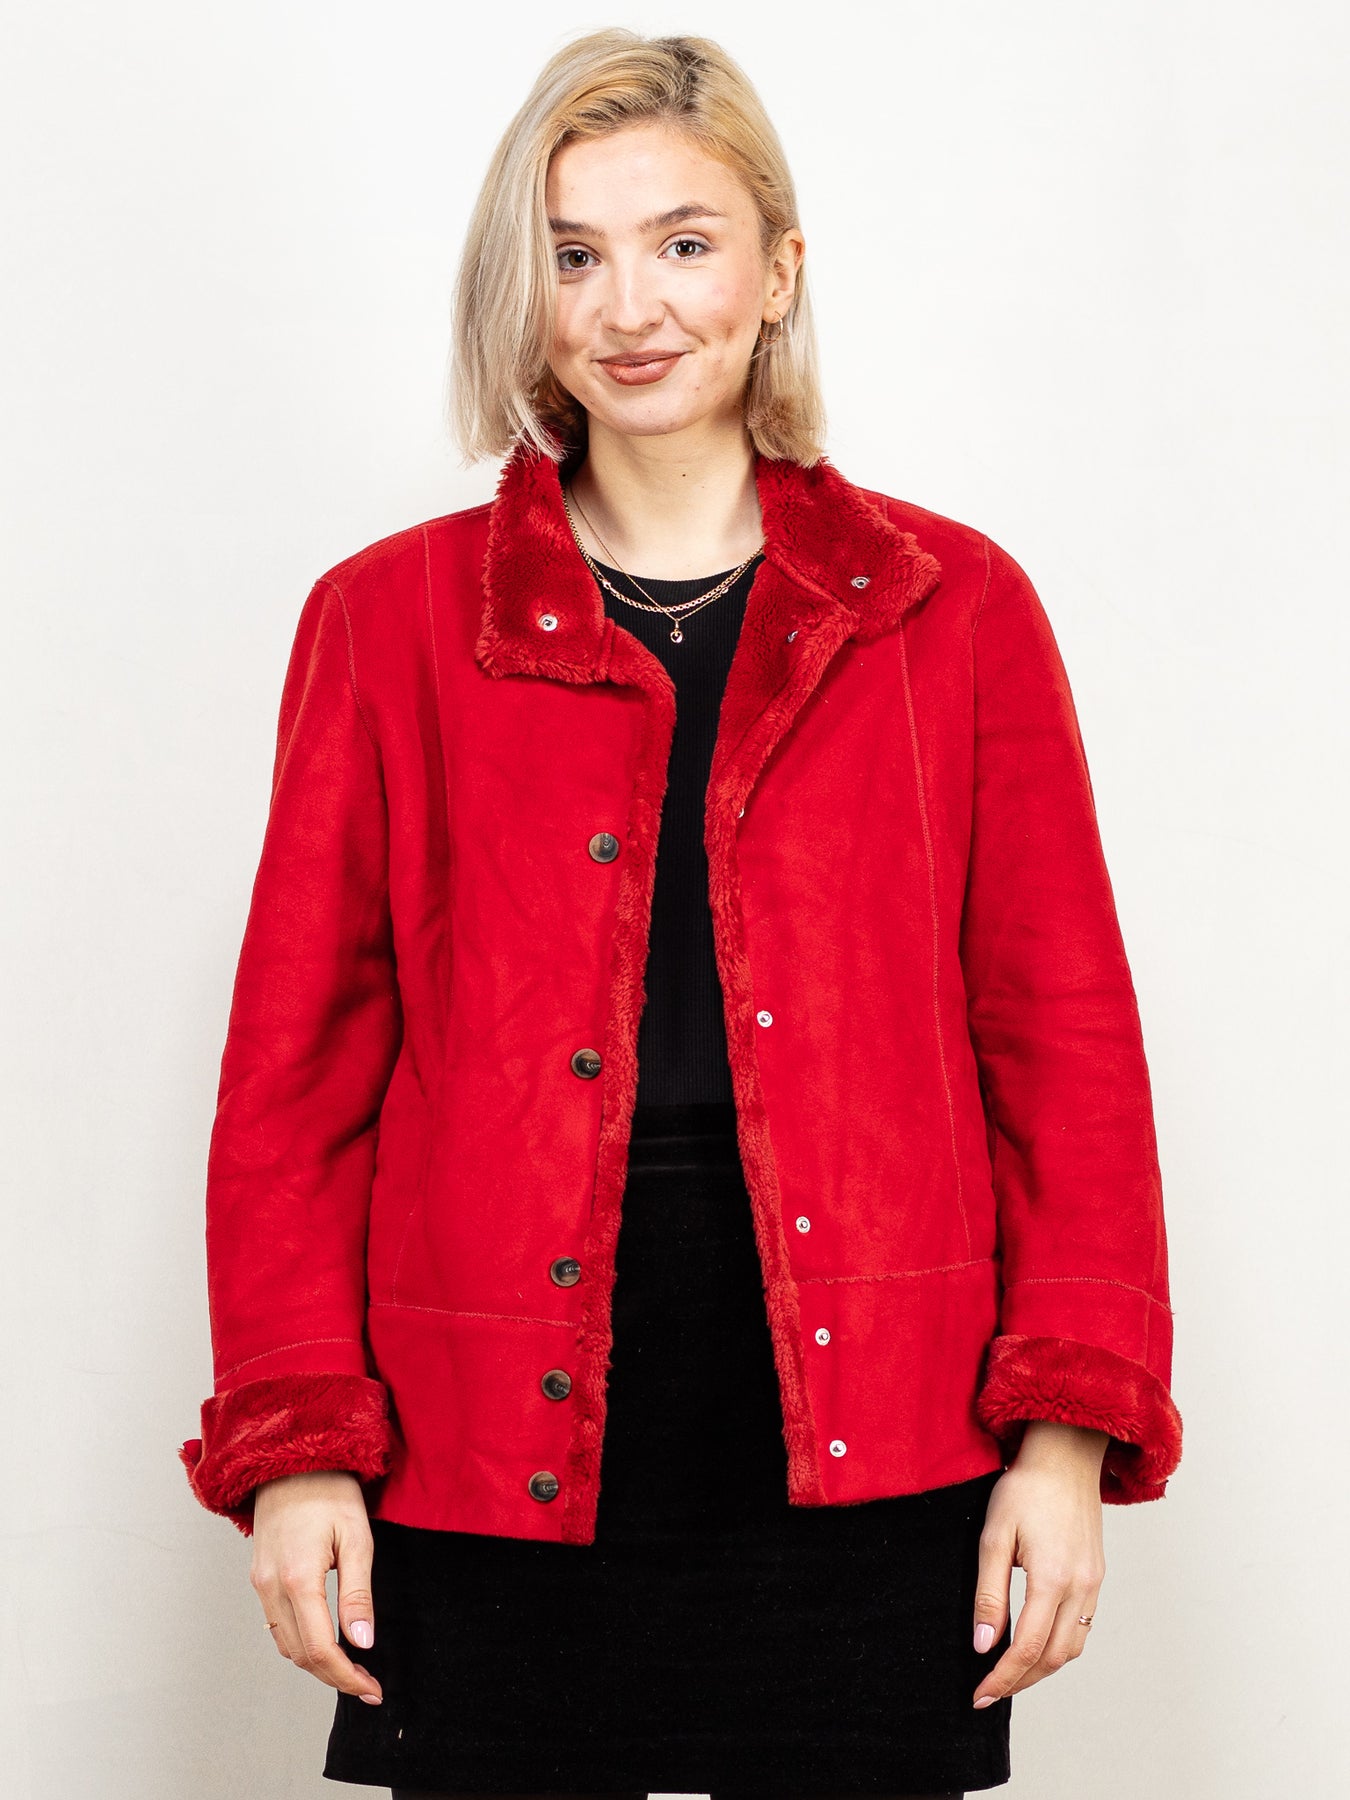 Online Vintage Store, 00's Women Fleece Jacket in Red